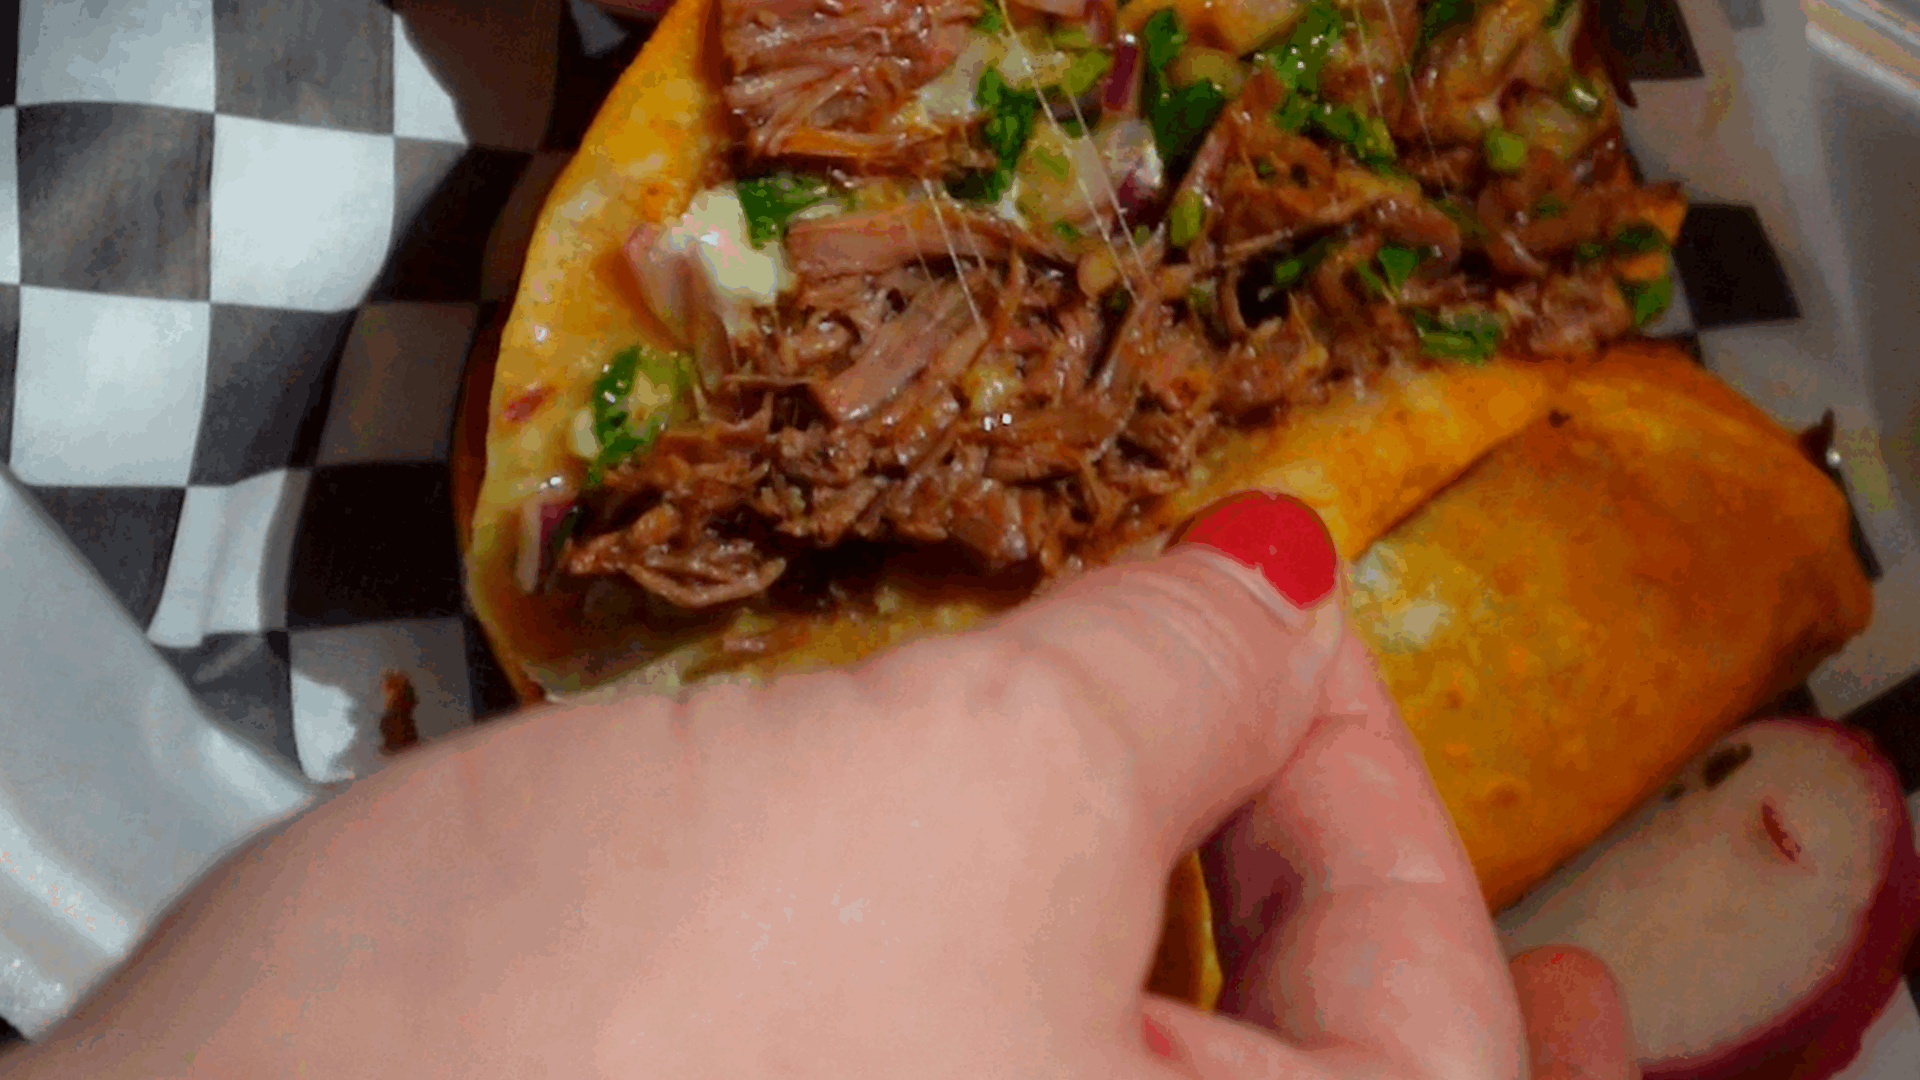 Tacos Los Ininguez quesabirria